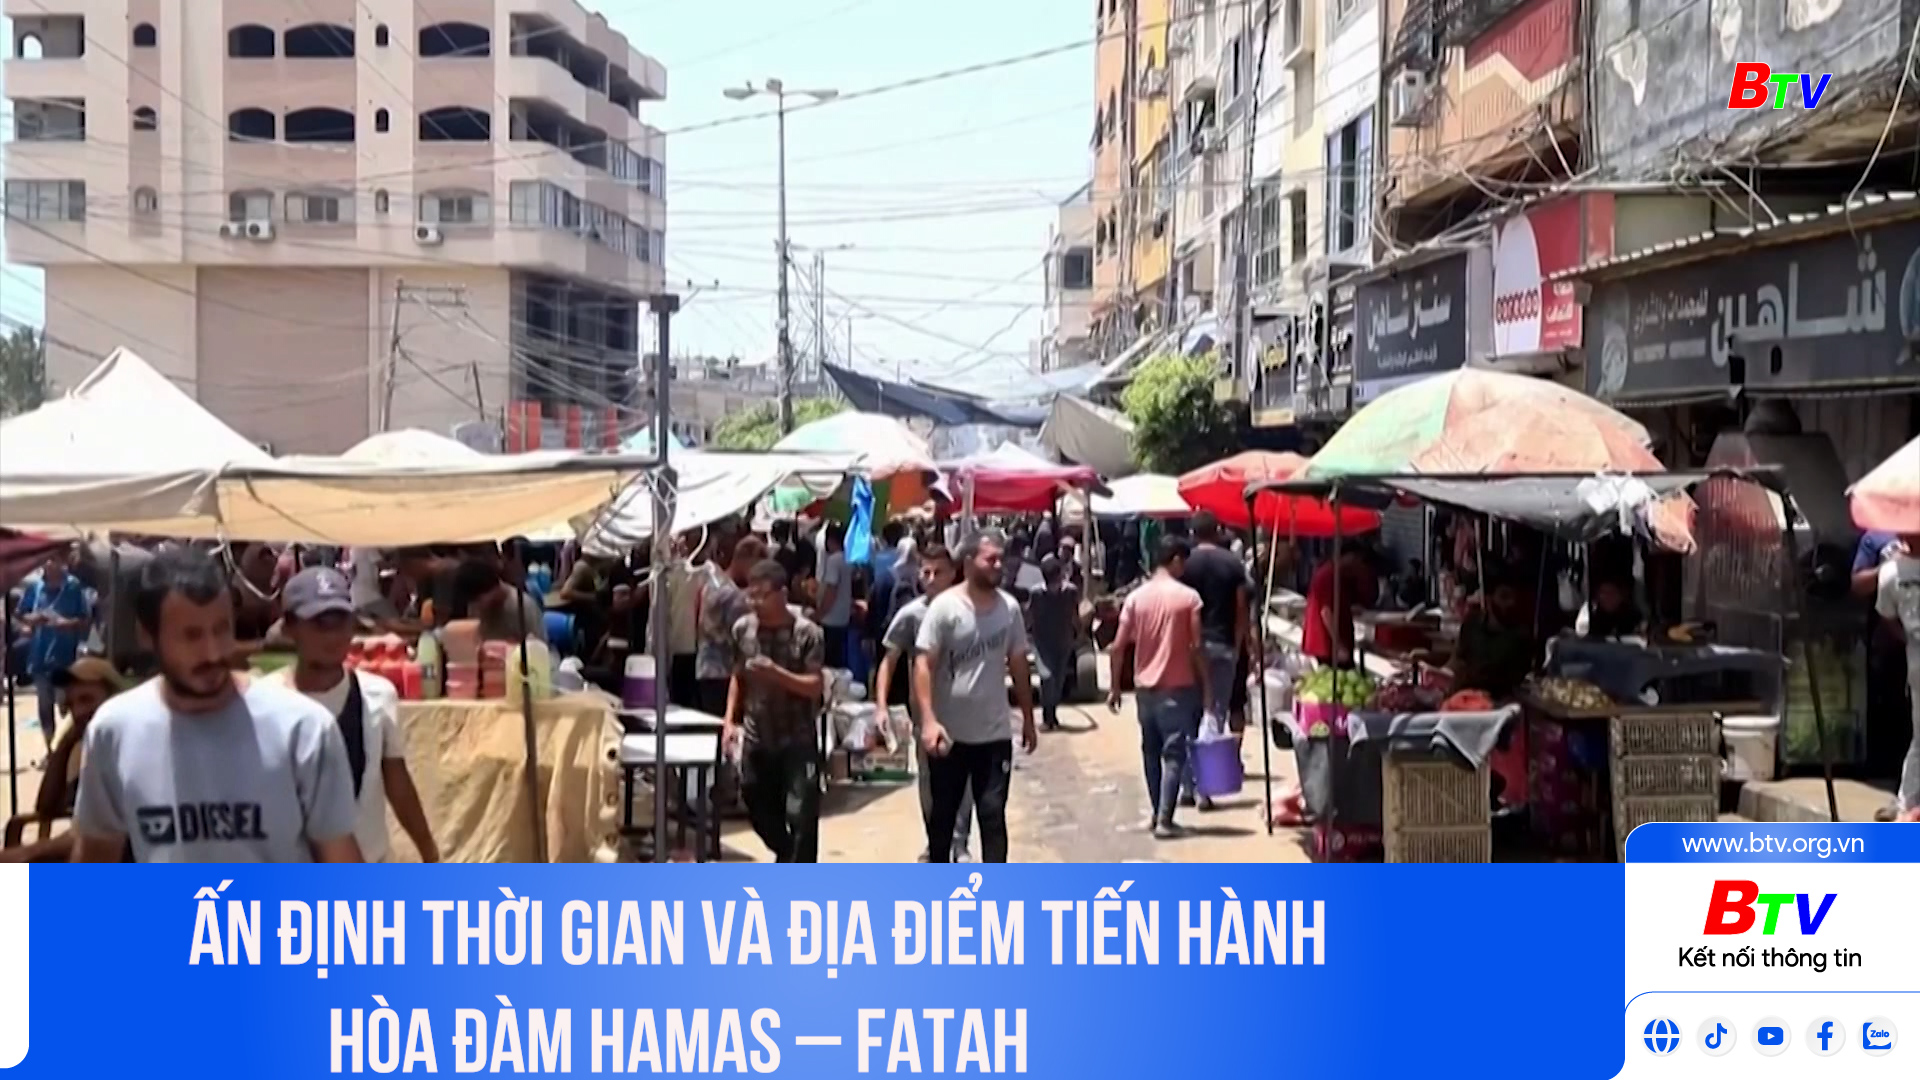 Ấn định thời gian và địa điểm tiến hành hòa đàm Hamas - Fatah